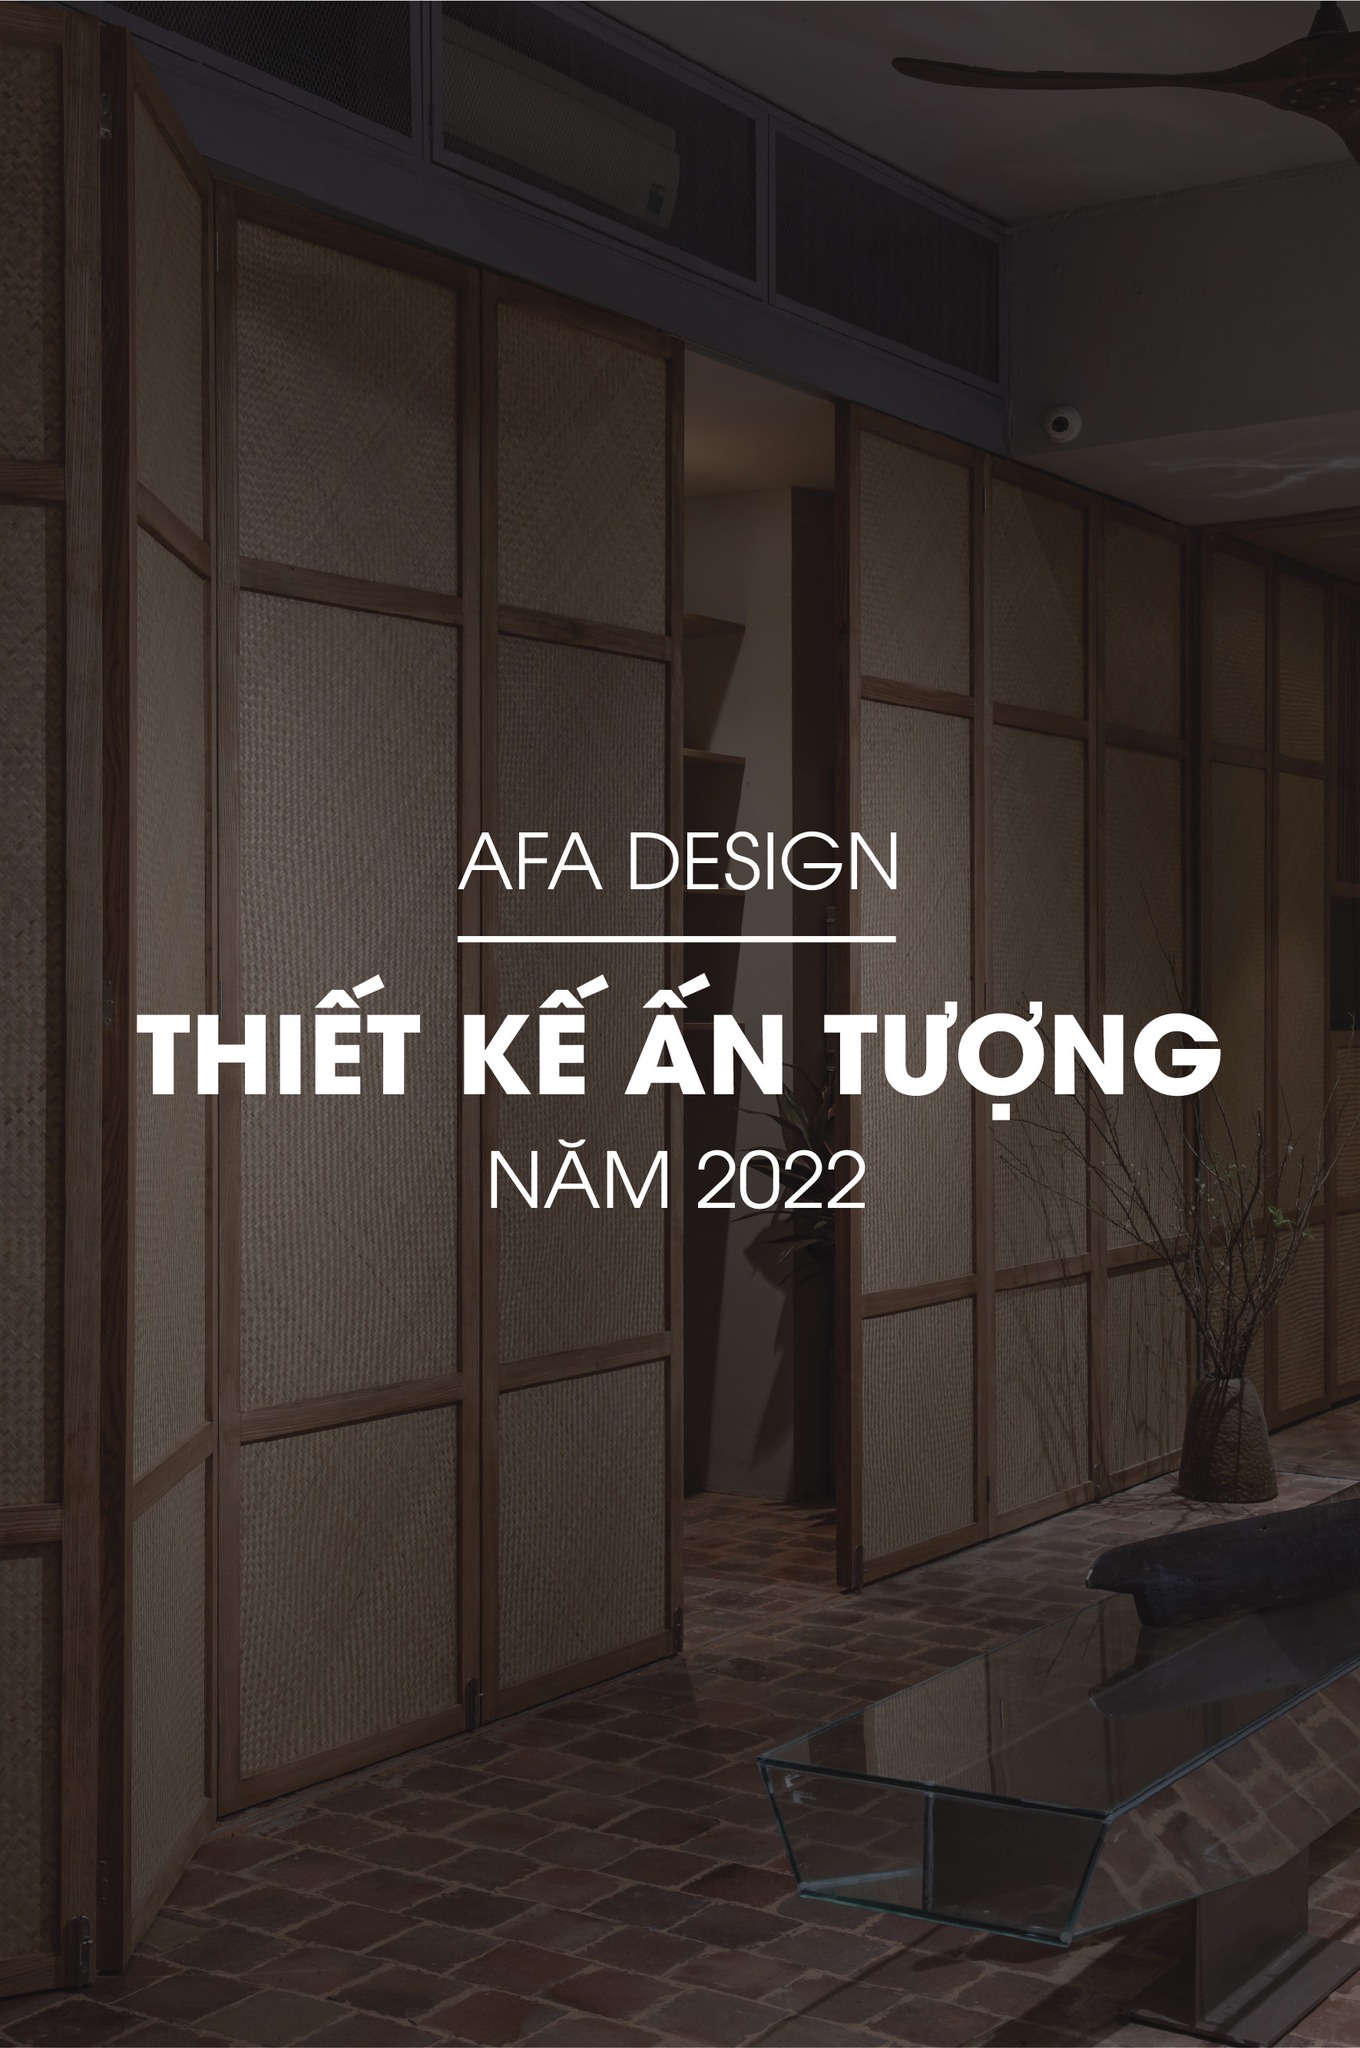 Văn phòng AfA Design - Thiết kế ấn tượng năm 2022